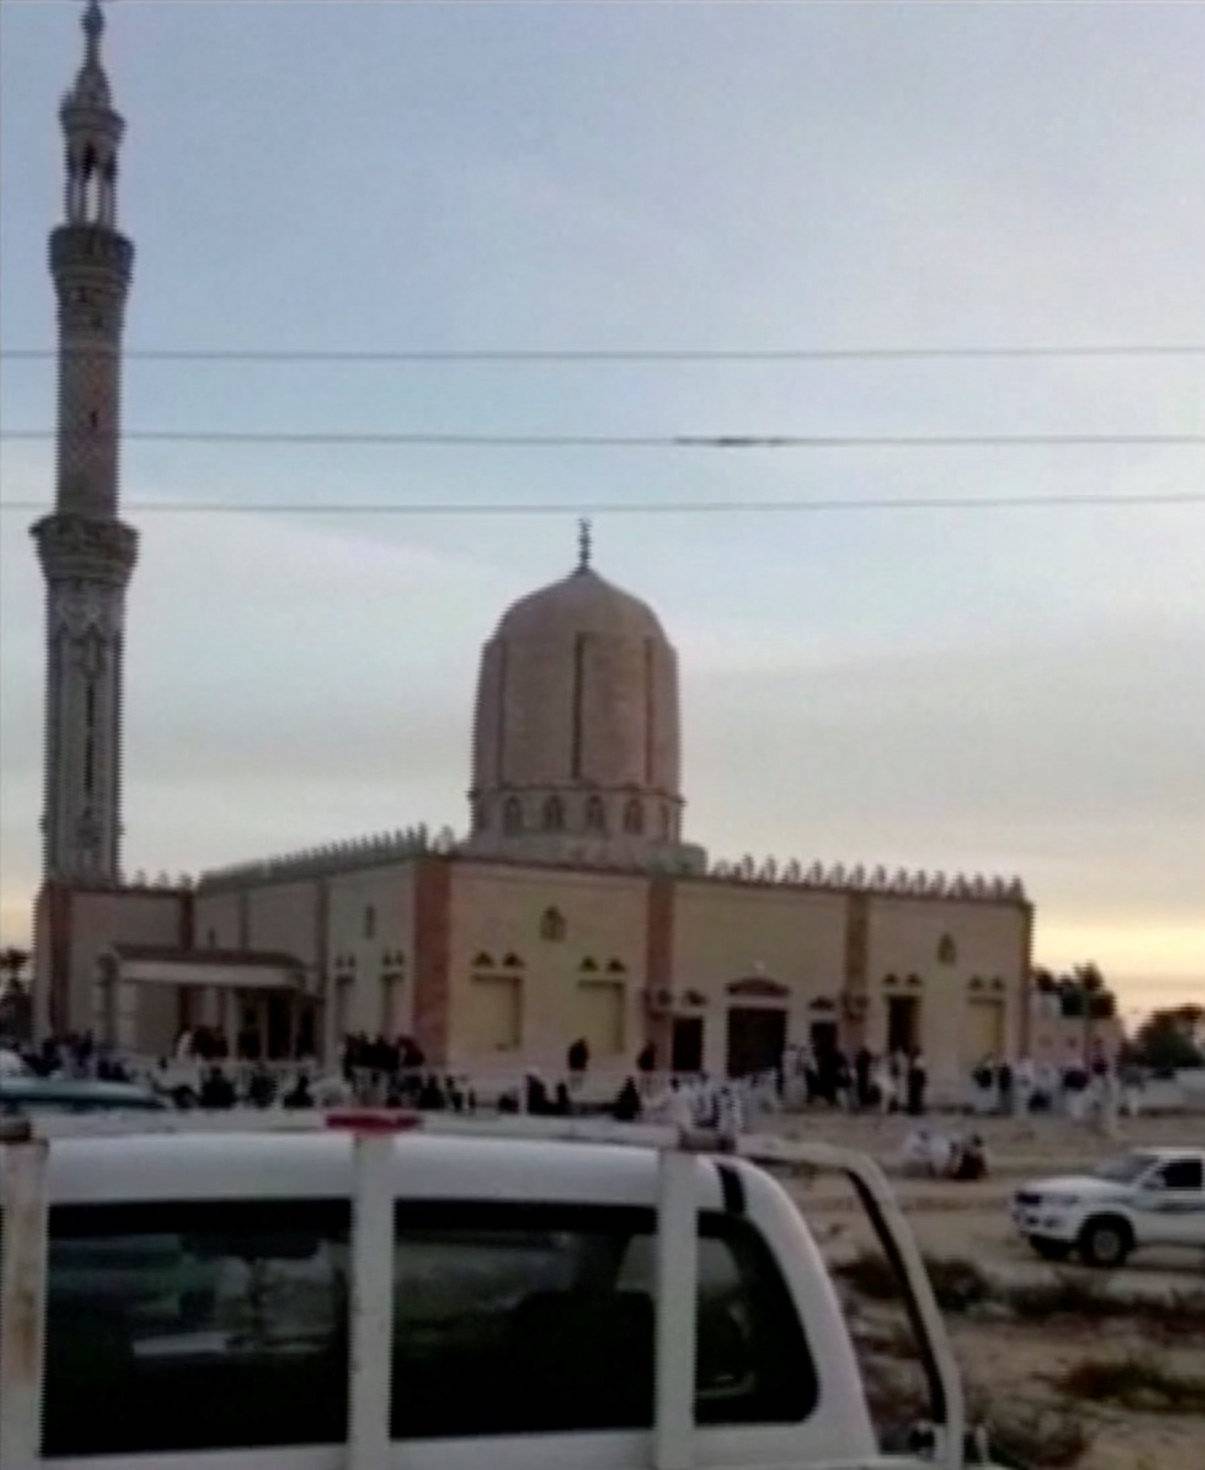 The exterior of Al Rawdah mosque is seen in Bir Al-Abed